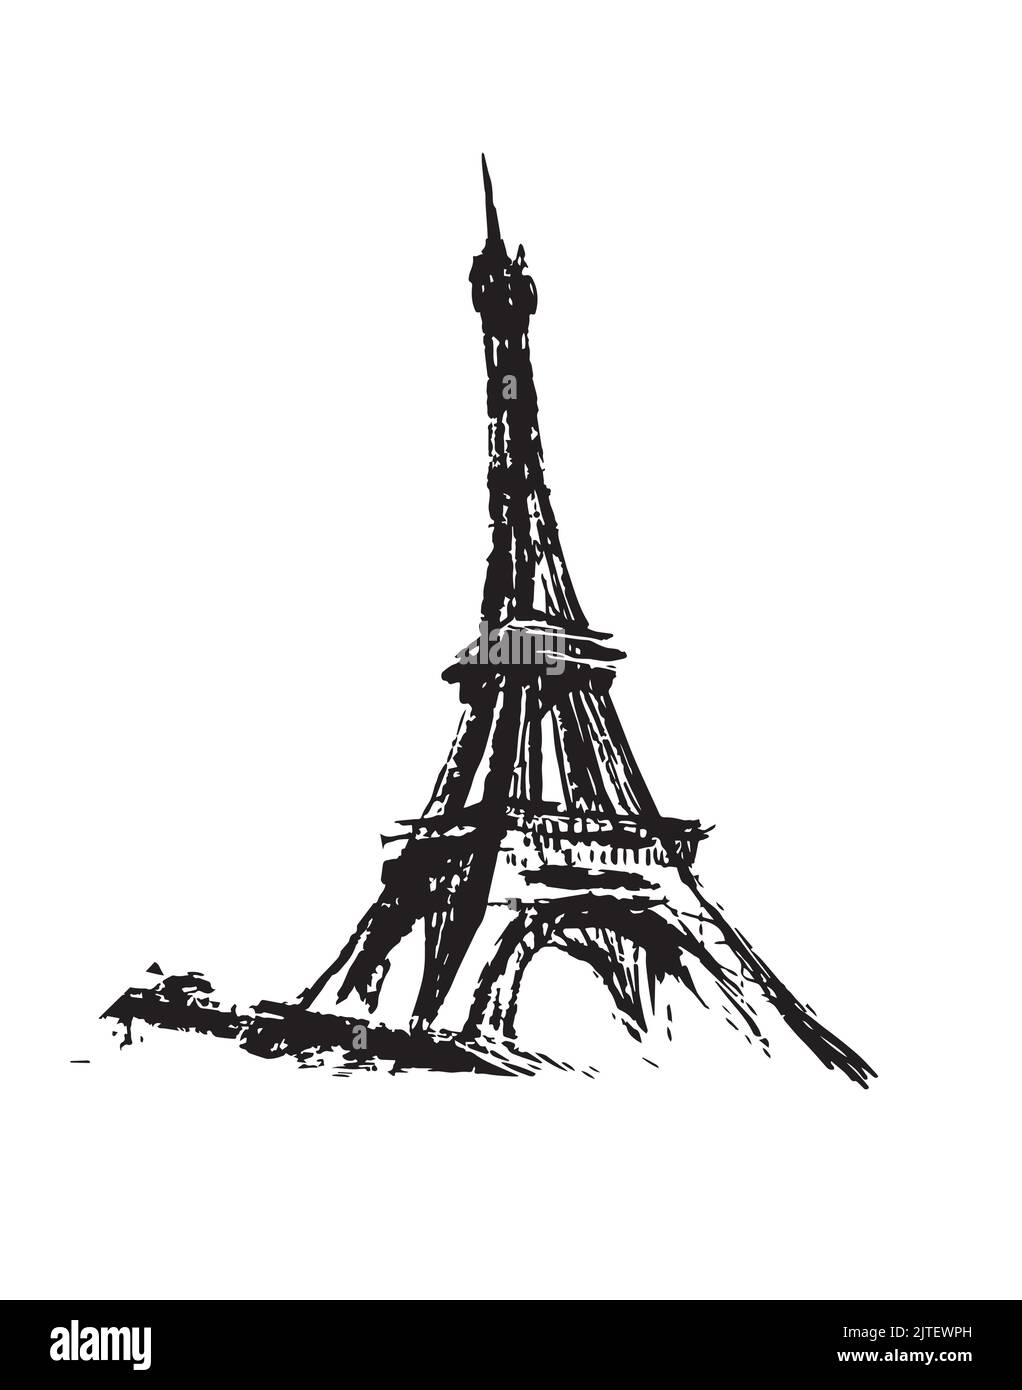 Tour Eiffel en France, dessin au pinceau grunge, icône vintage, symbole de la France. Esquisse de caniche vectorielle isolée sur un arrière-plan blanc Illustration de Vecteur